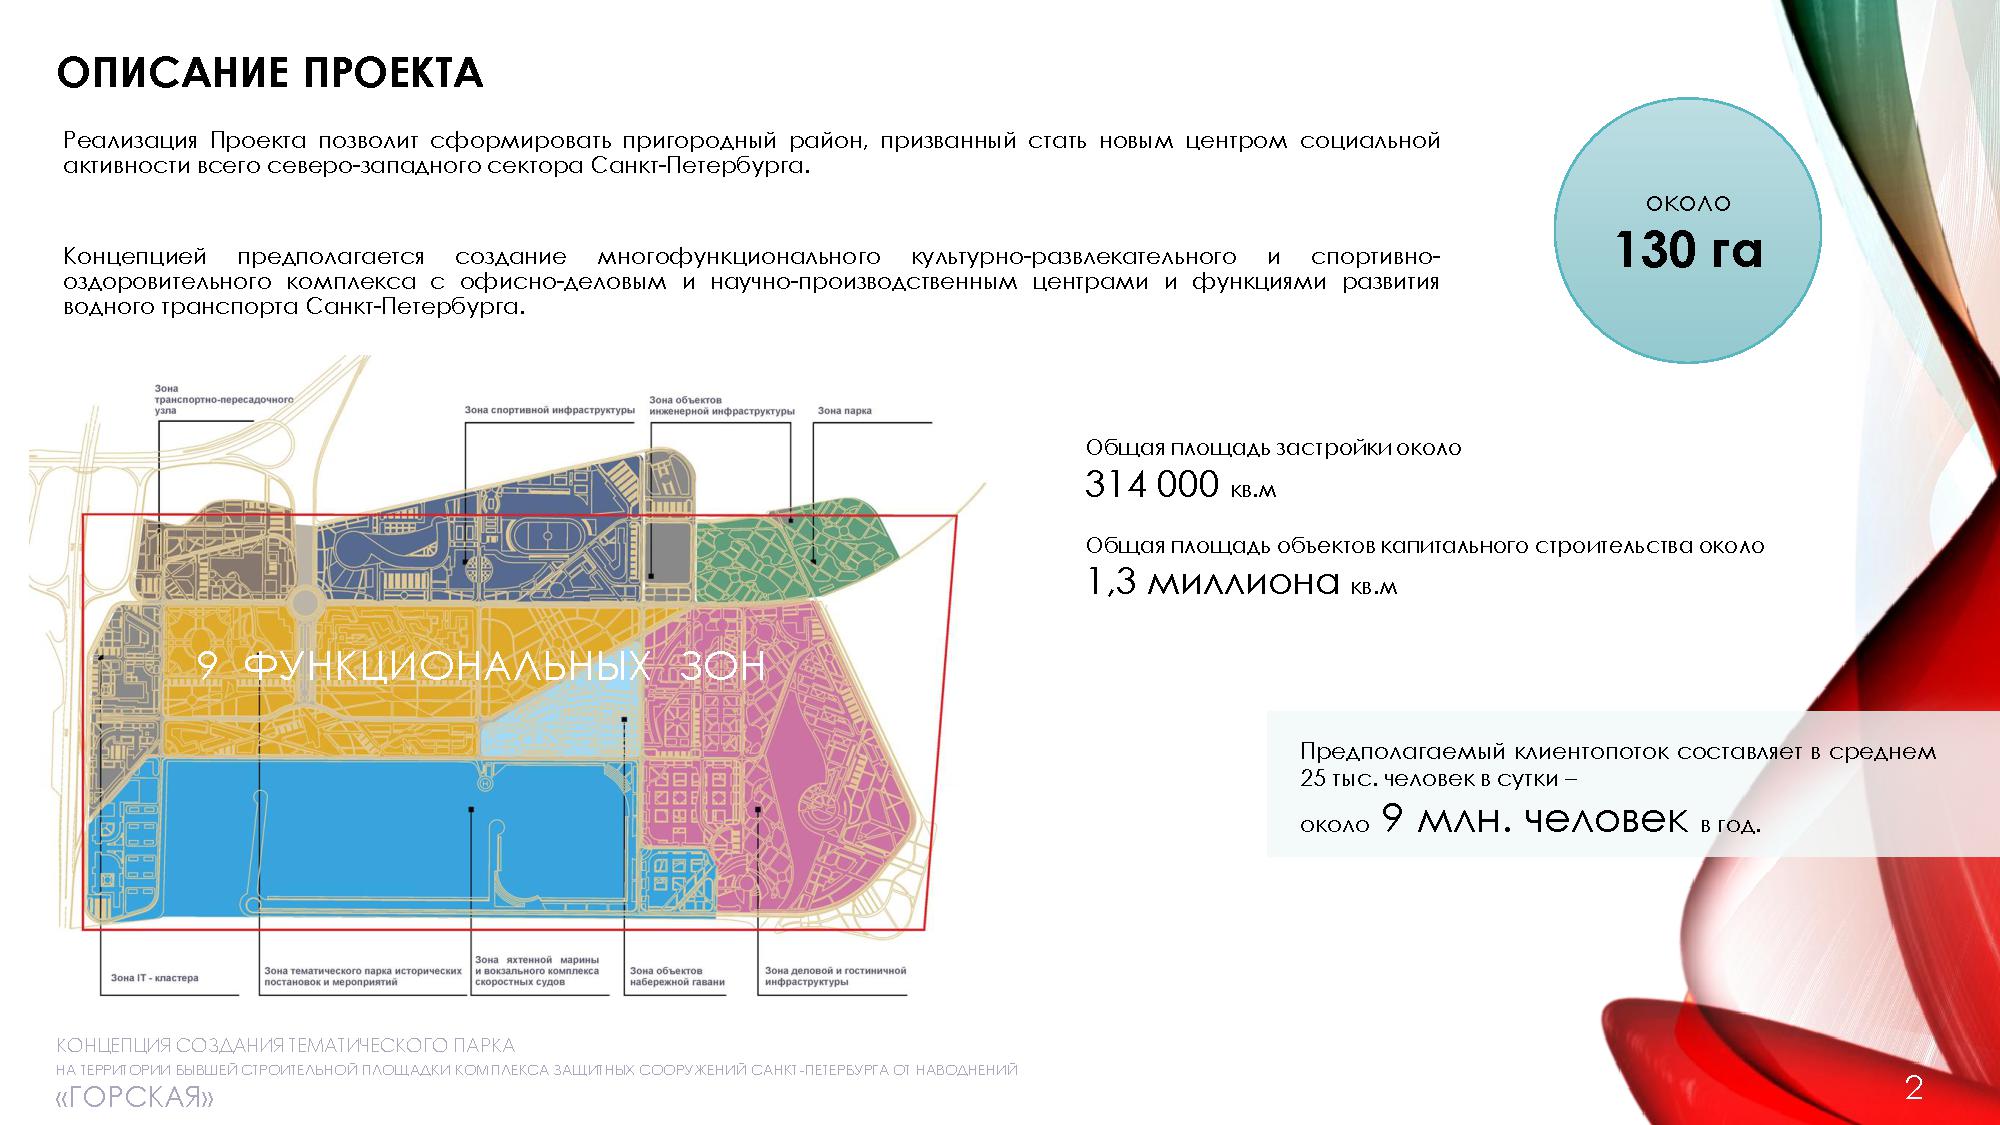 фрагмент концепции создания тематического парка на территории бывшей строительной площадки КЗС «Горская»